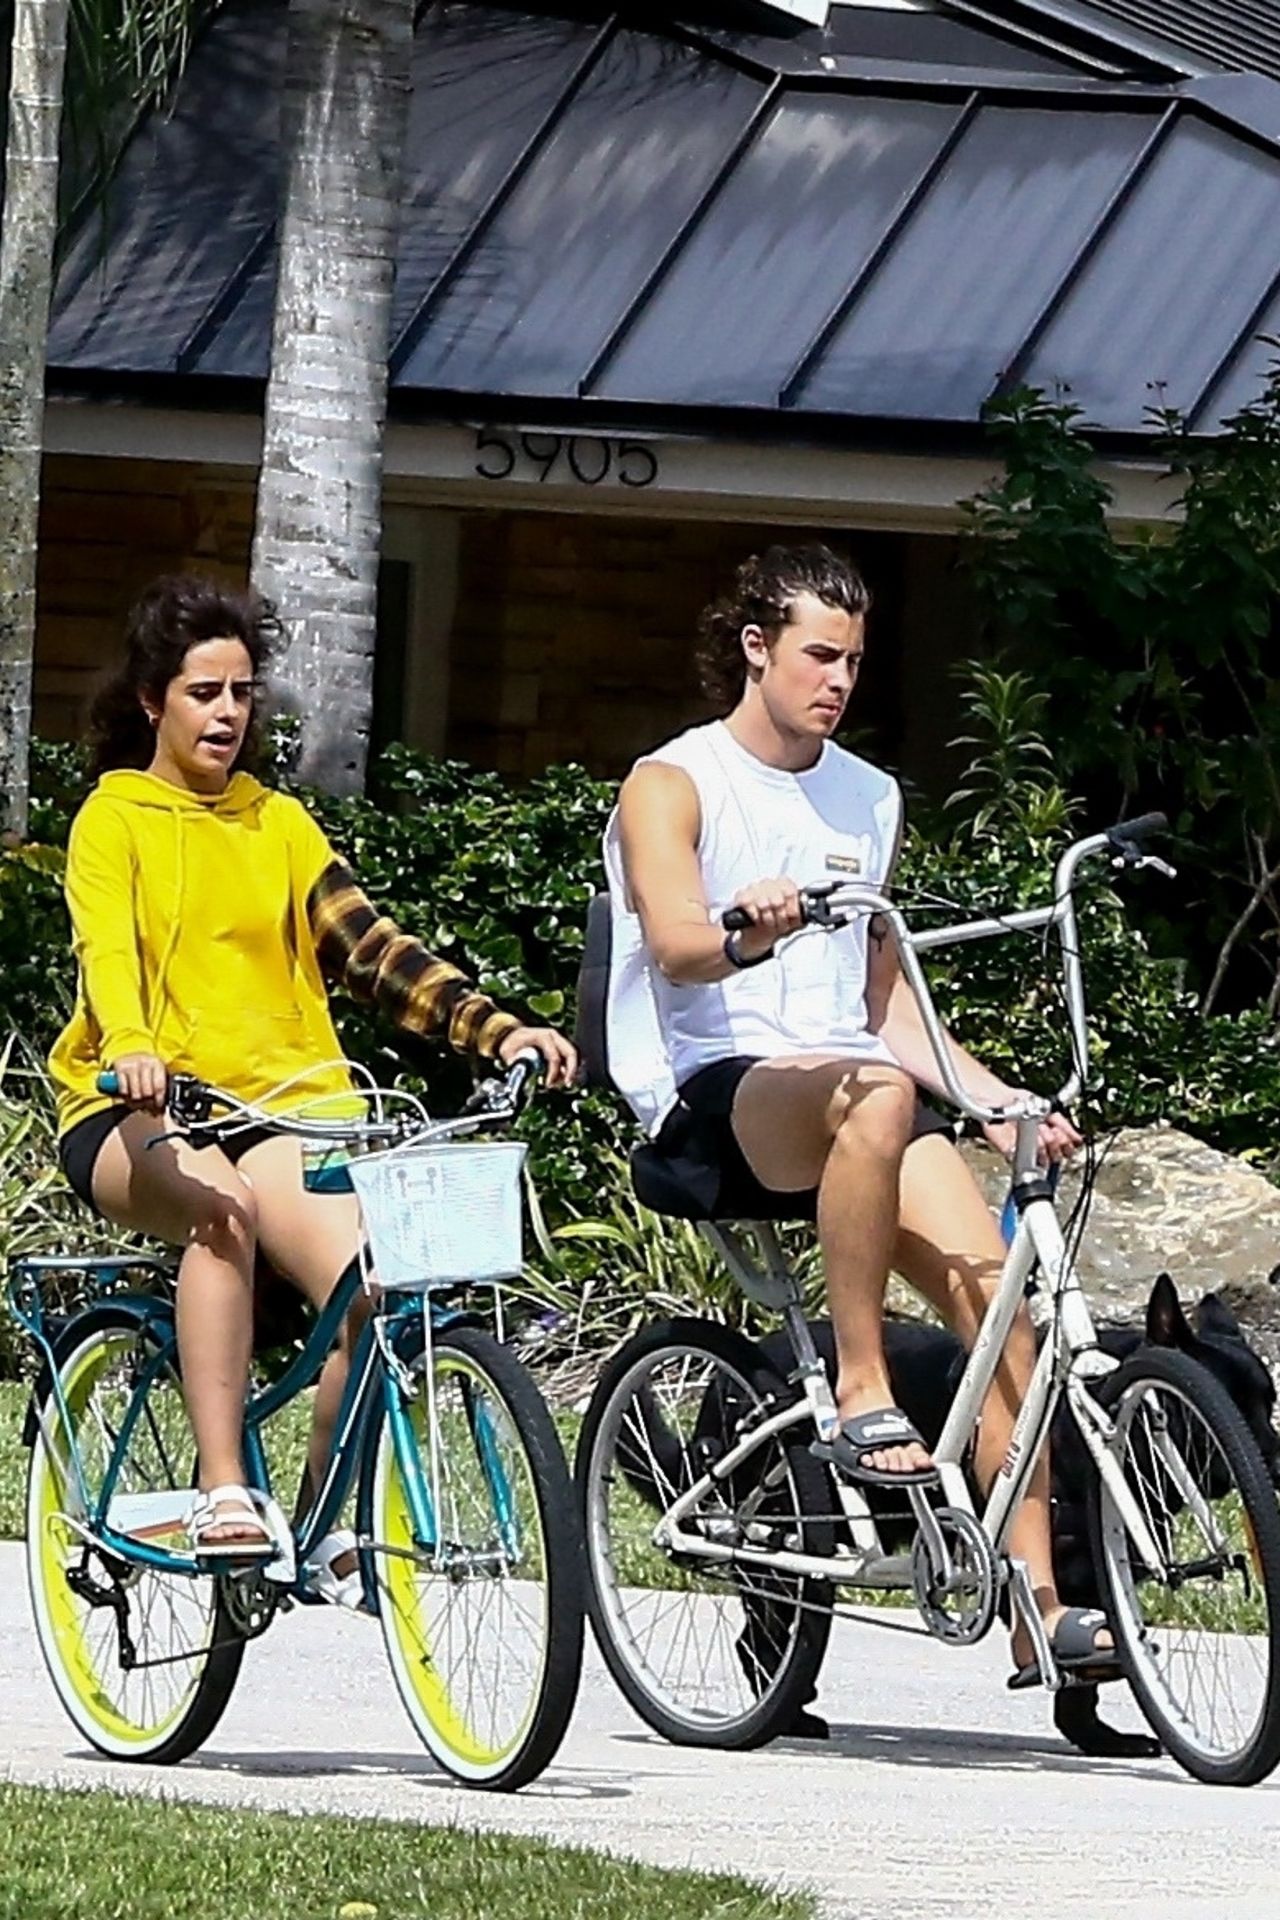 camila-cabello-and-shawn-mendes-bike-ride-in-miami-11-04-2020-0.jpg